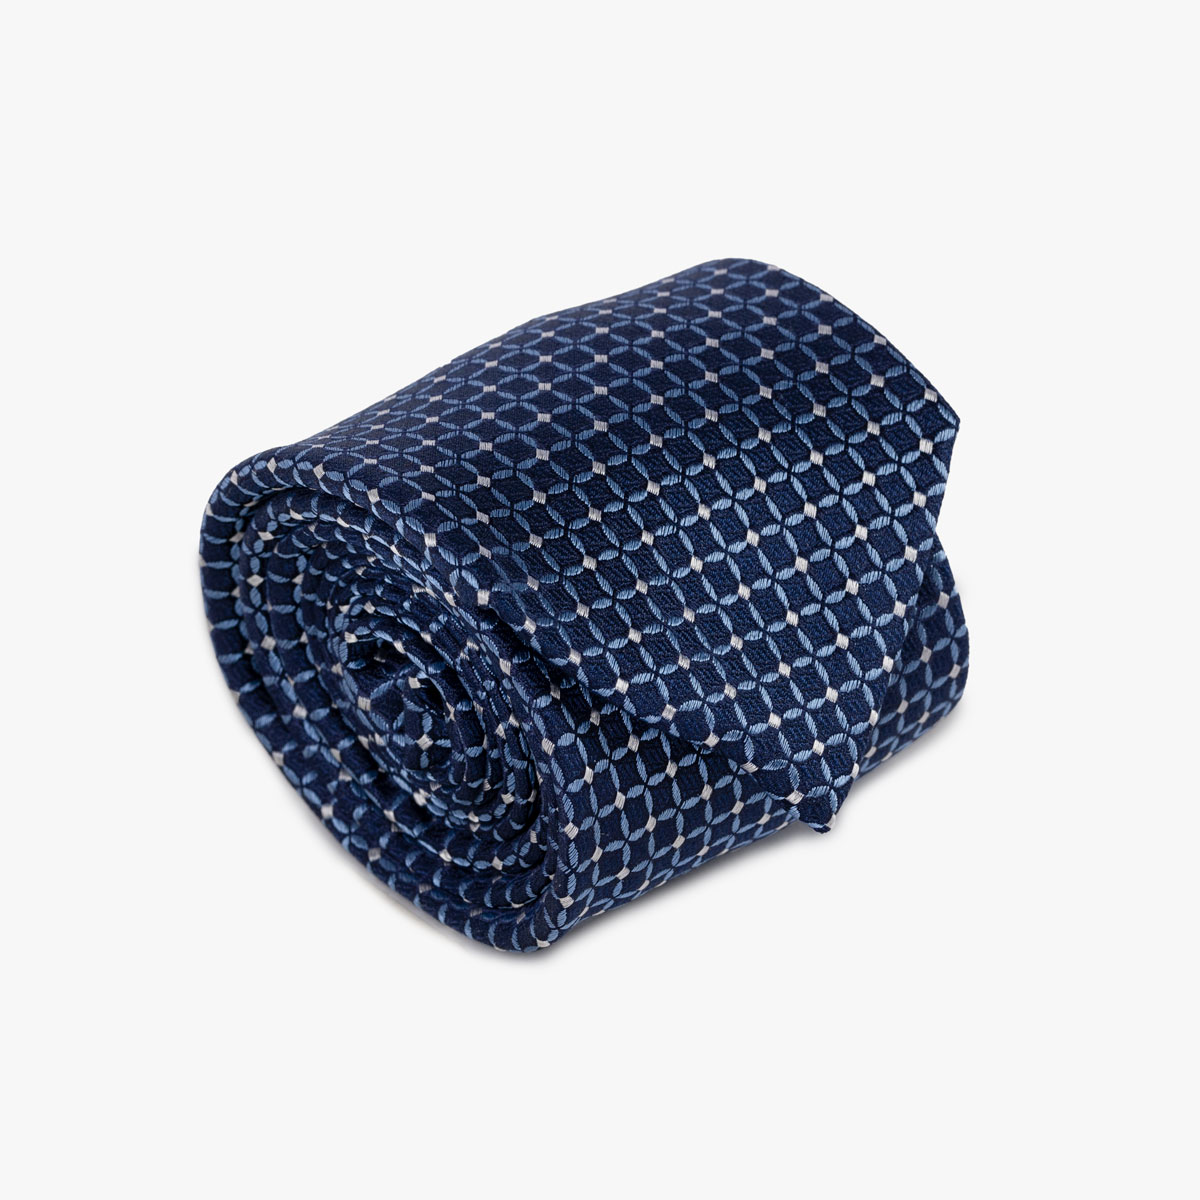 Krawatte mit geometrischem Muster in blau silber 